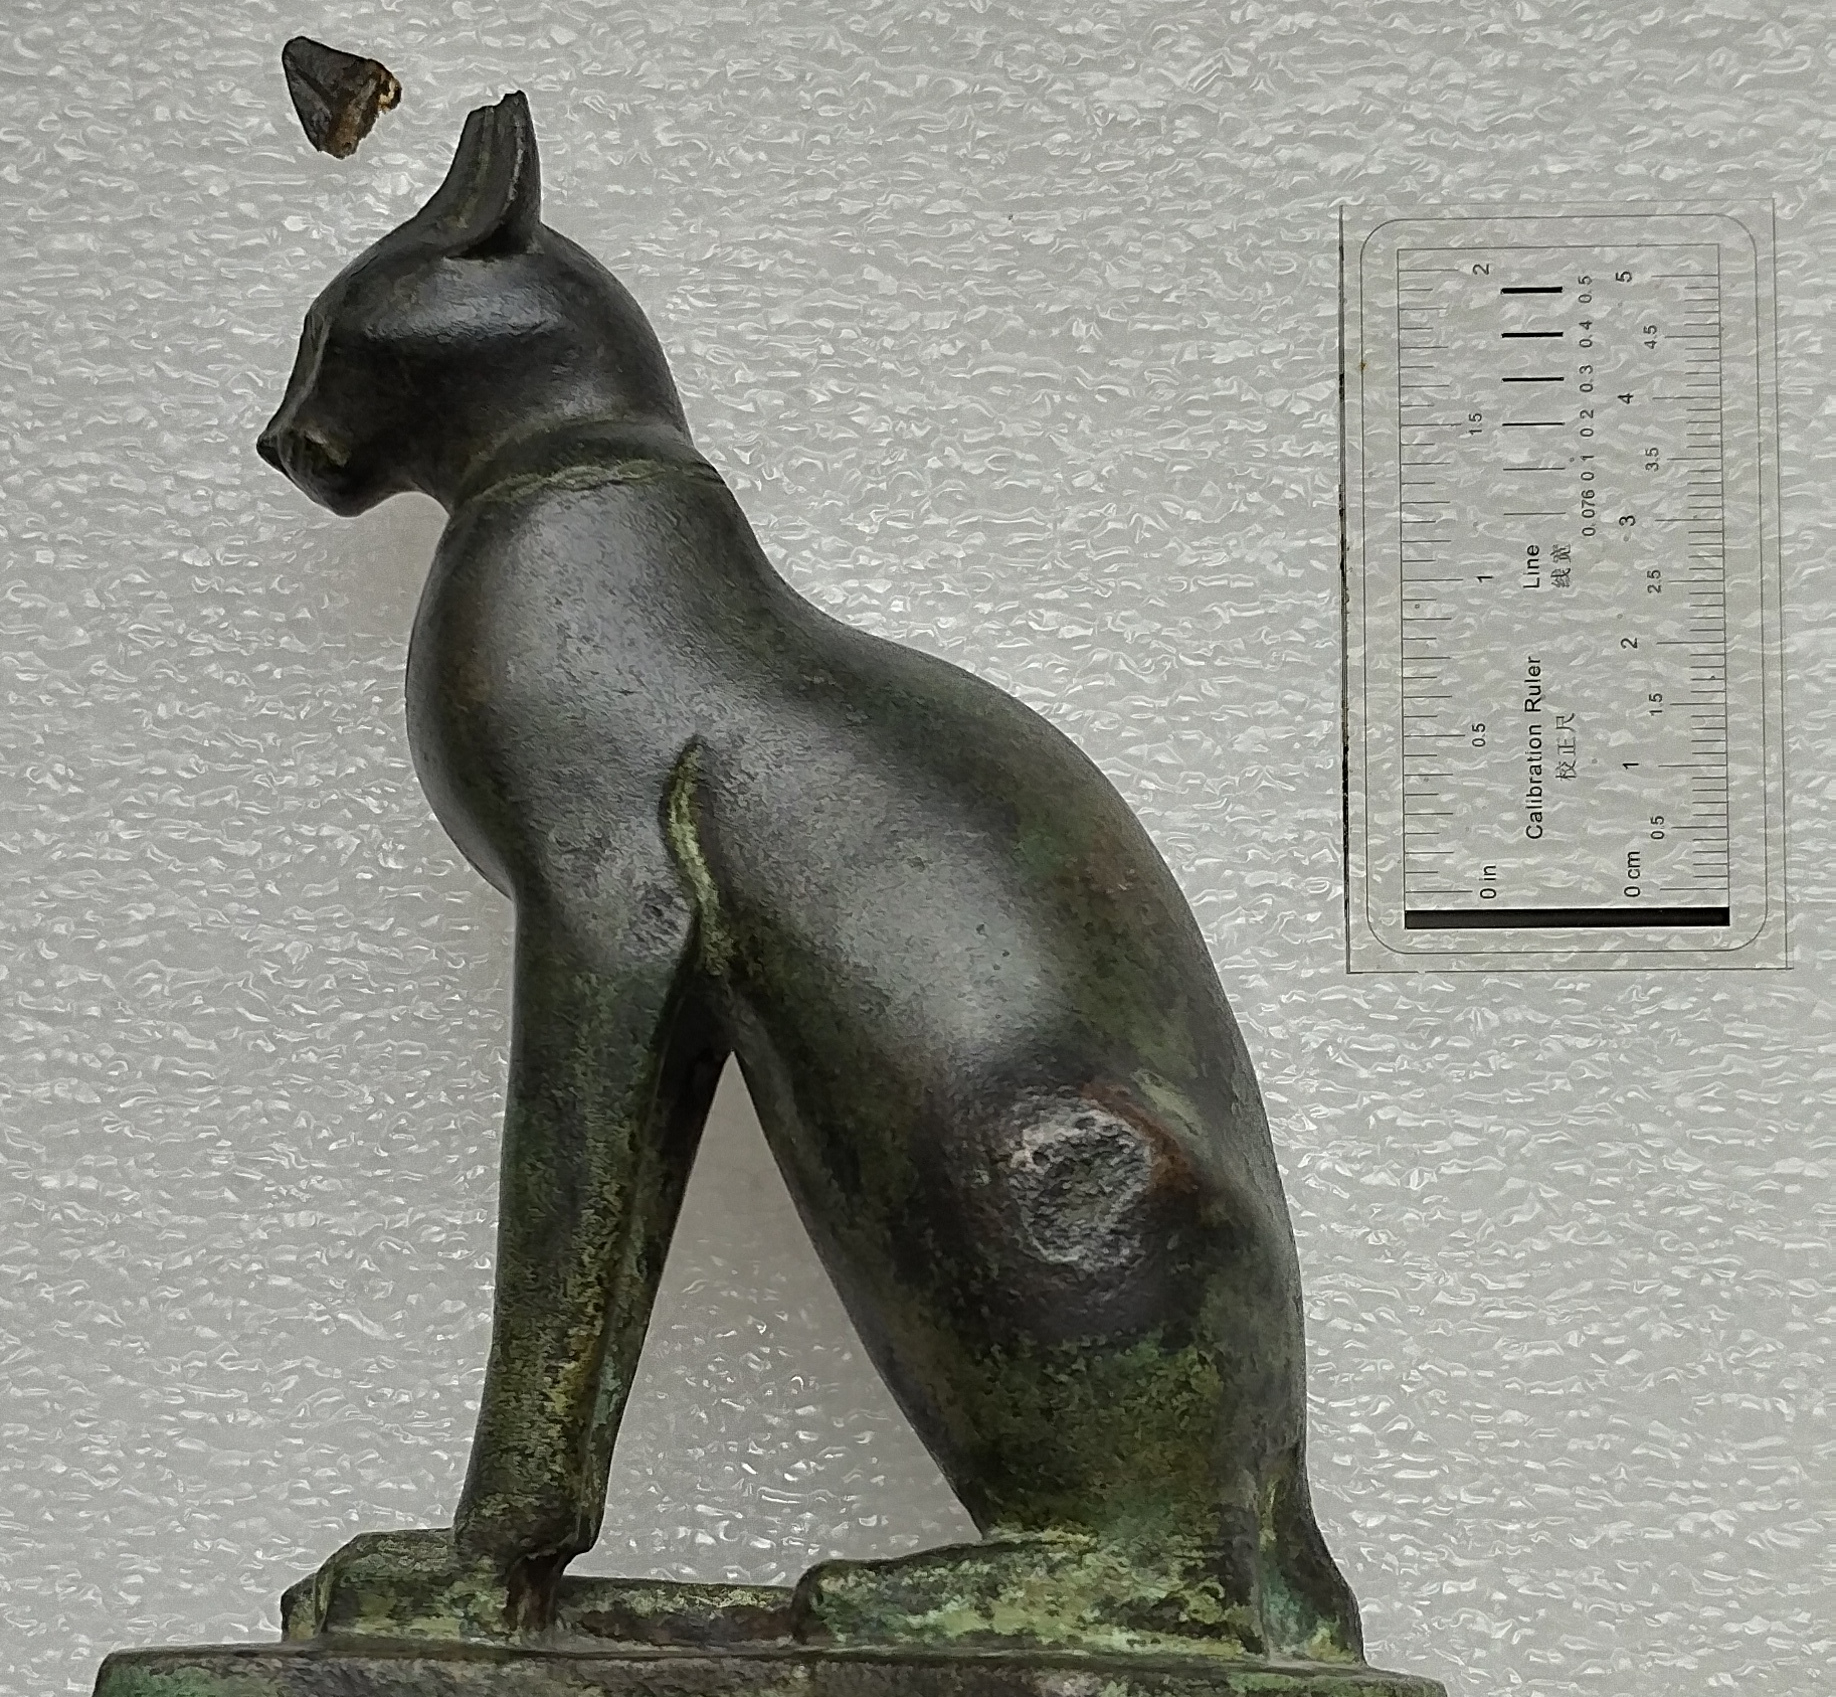  Egyptian bronce figure